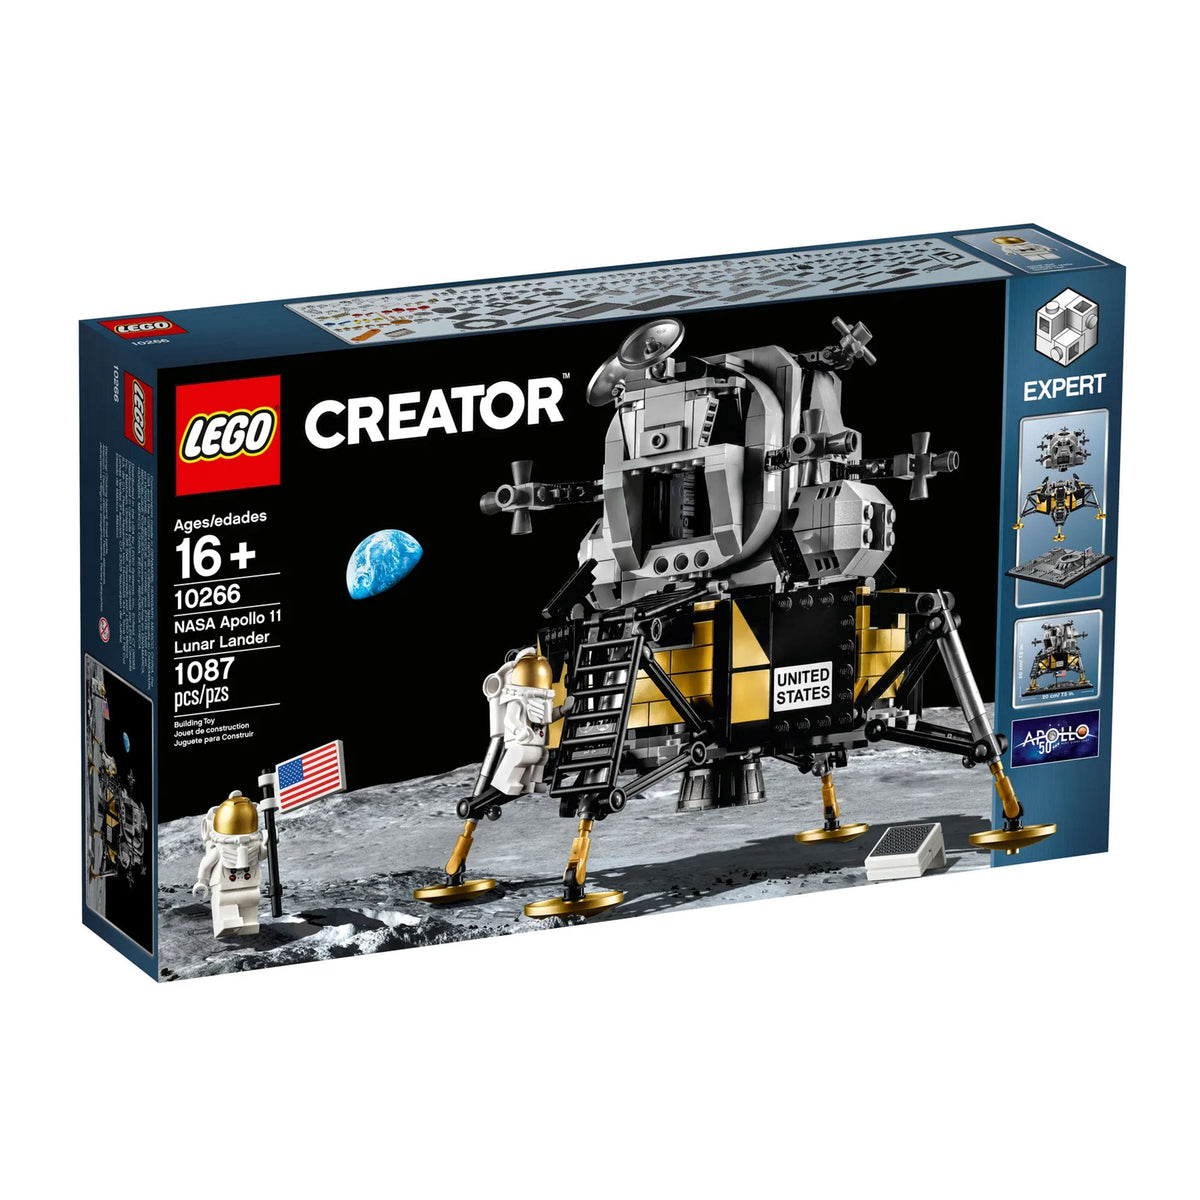 LEGO Toys & Games LEGO Creator NASA Apollo 11 Lunar Lander V39, 10266, Ages 16+, 1087 Pieces 673419302432